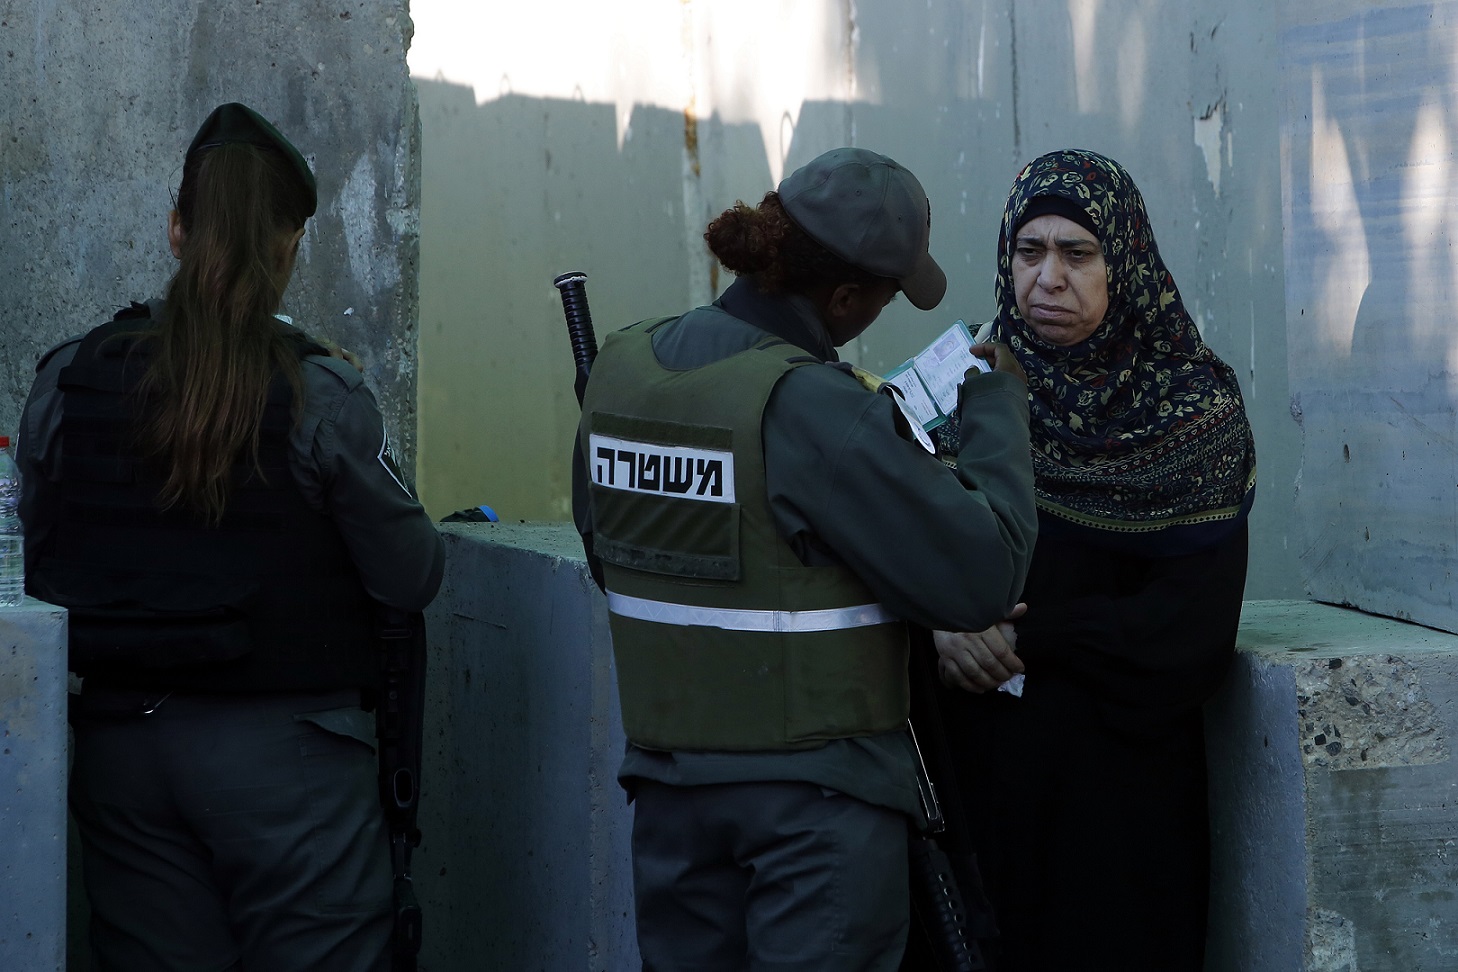 Des soldats israéliens contrôlent les documents d’identité d’une Palestinienne à un check-point situé entre Bethléem et Jérusalem pendant le Ramadan, le 2 juin 2017 (AFP)